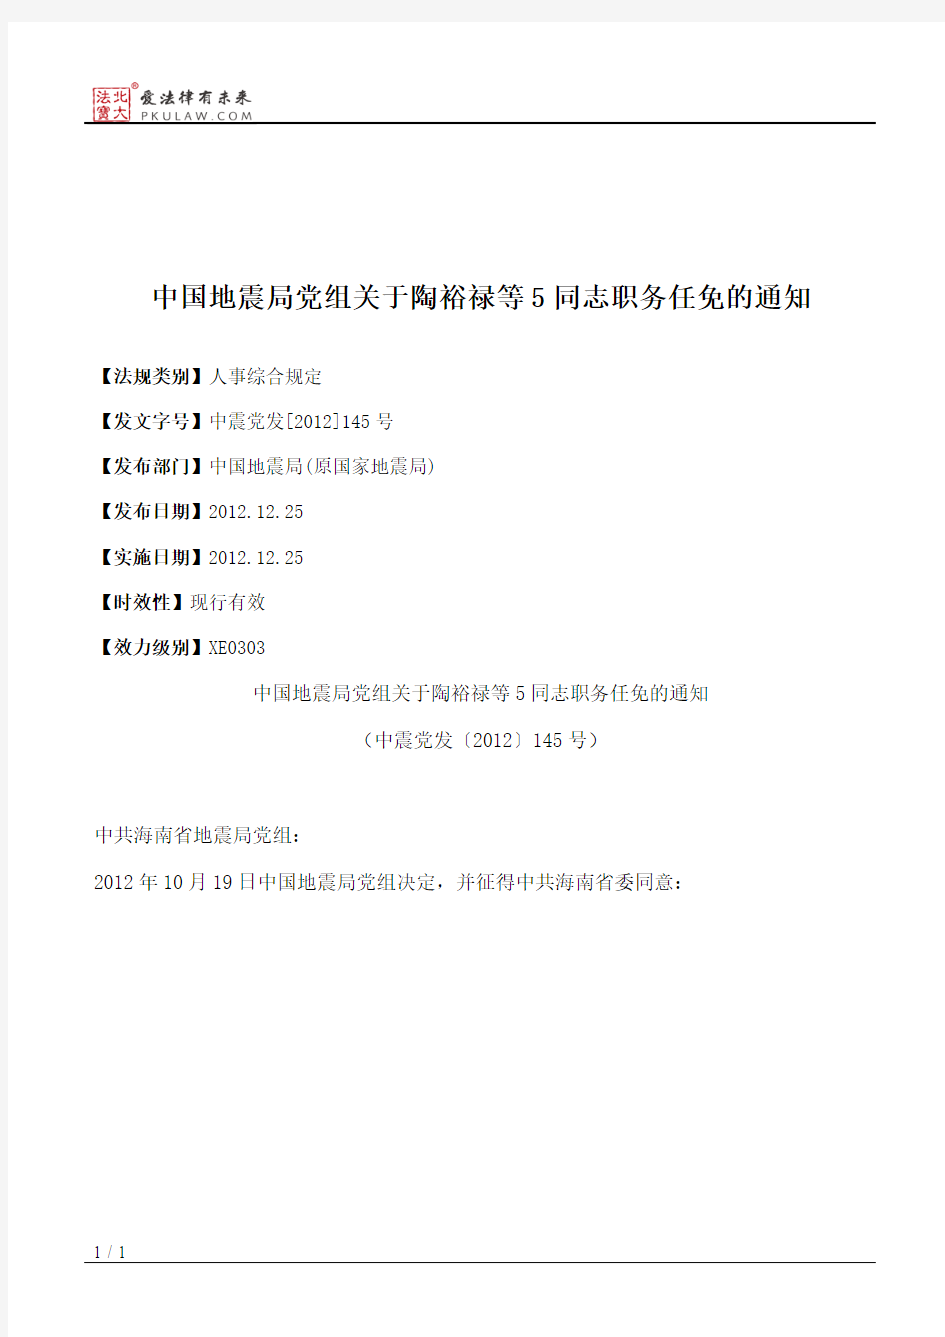 中国地震局党组关于陶裕禄等5同志职务任免的通知